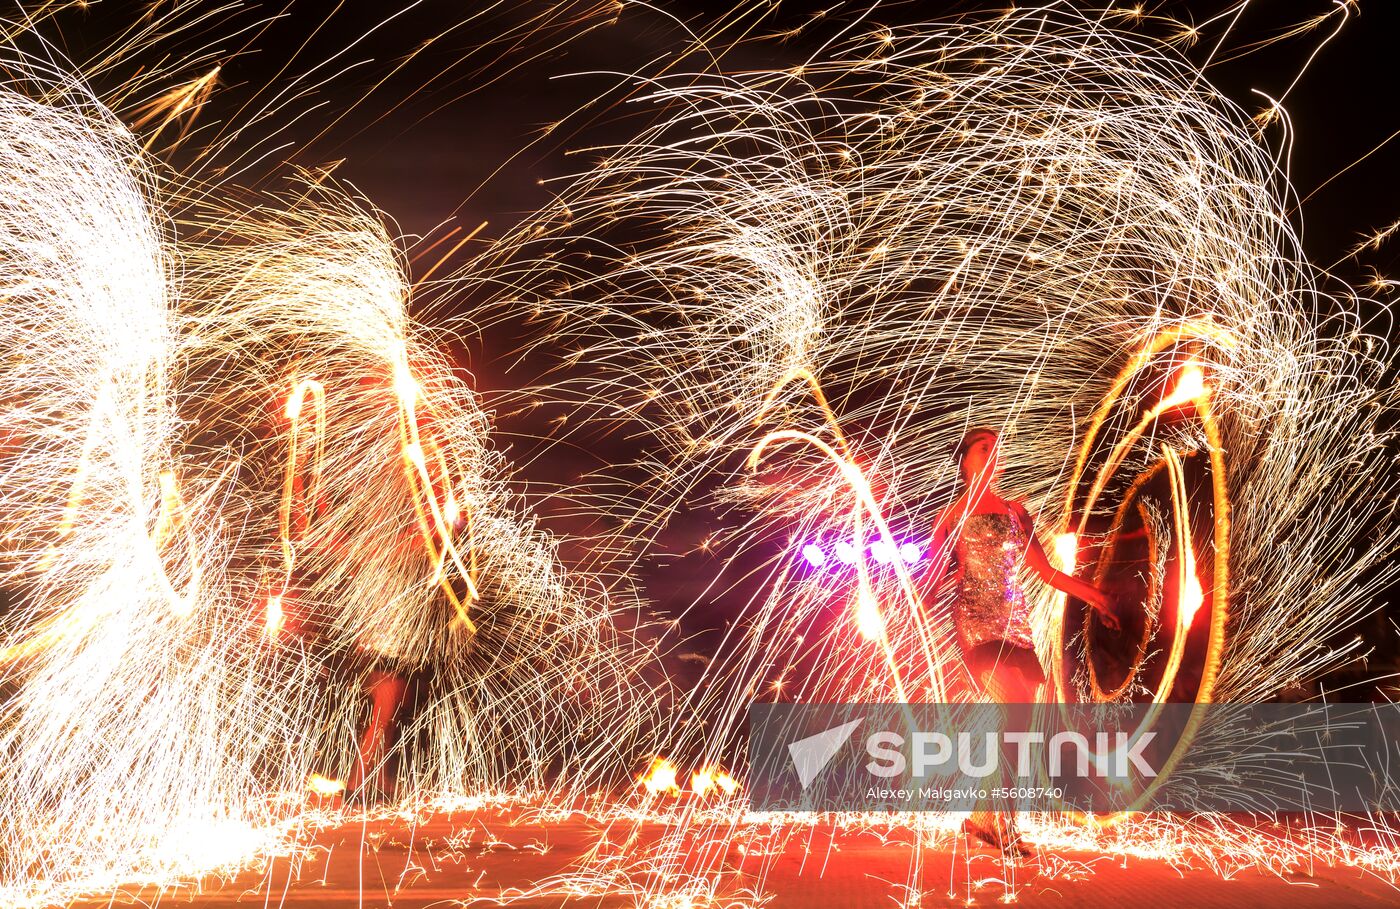 Crimea Fire Fest in Koktebel